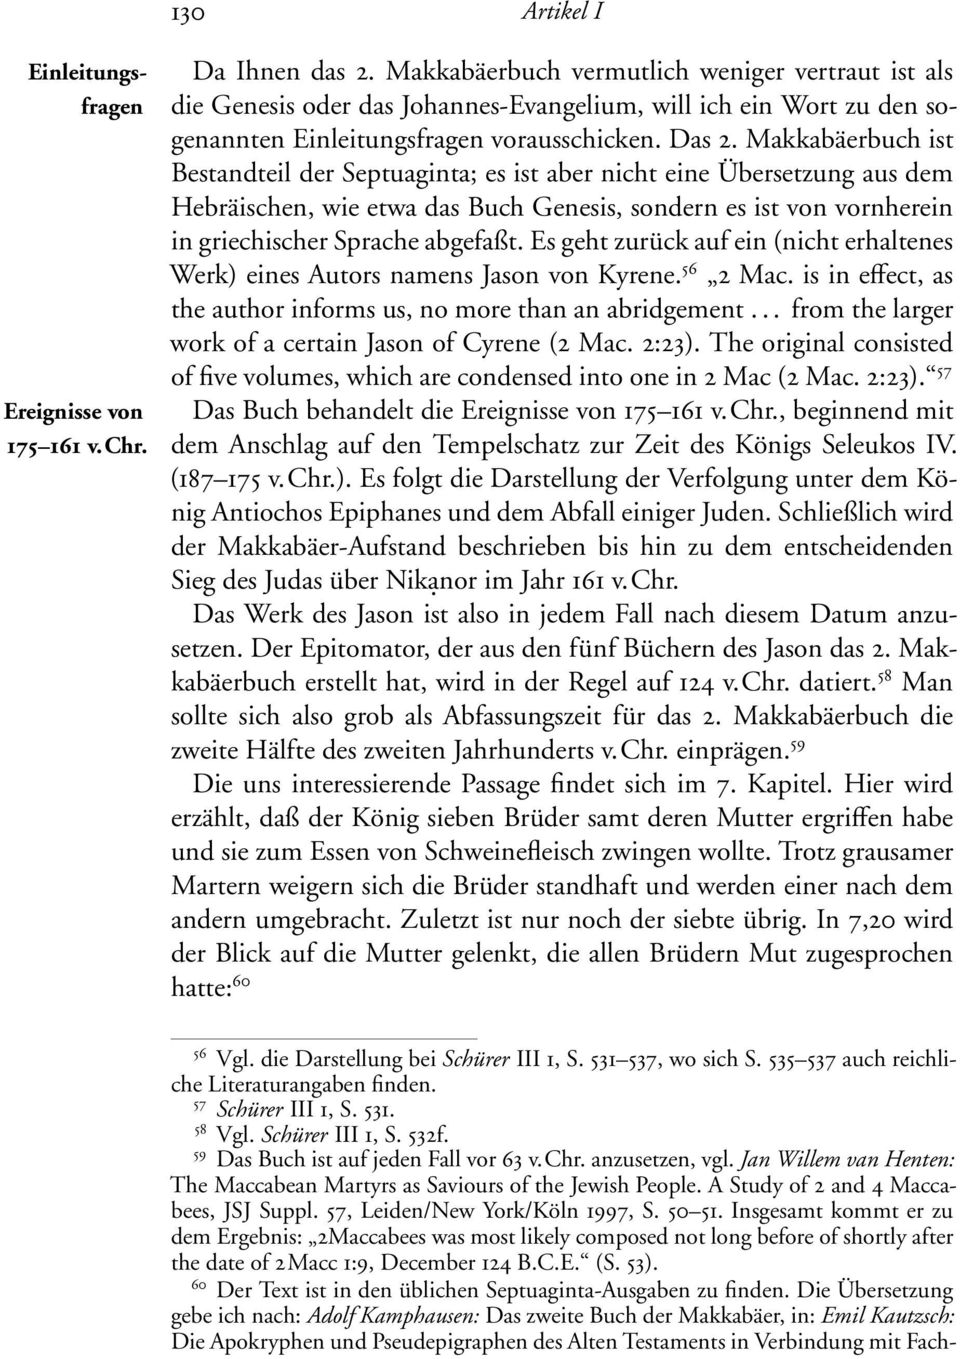 Makkabäerbuch ist Bestandteil der Septuaginta; es ist aber nicht eine Übersetzung aus dem Hebräischen, wie etwa das Buch Genesis, sondern es ist von vornherein in griechischer Sprache abgefaßt.